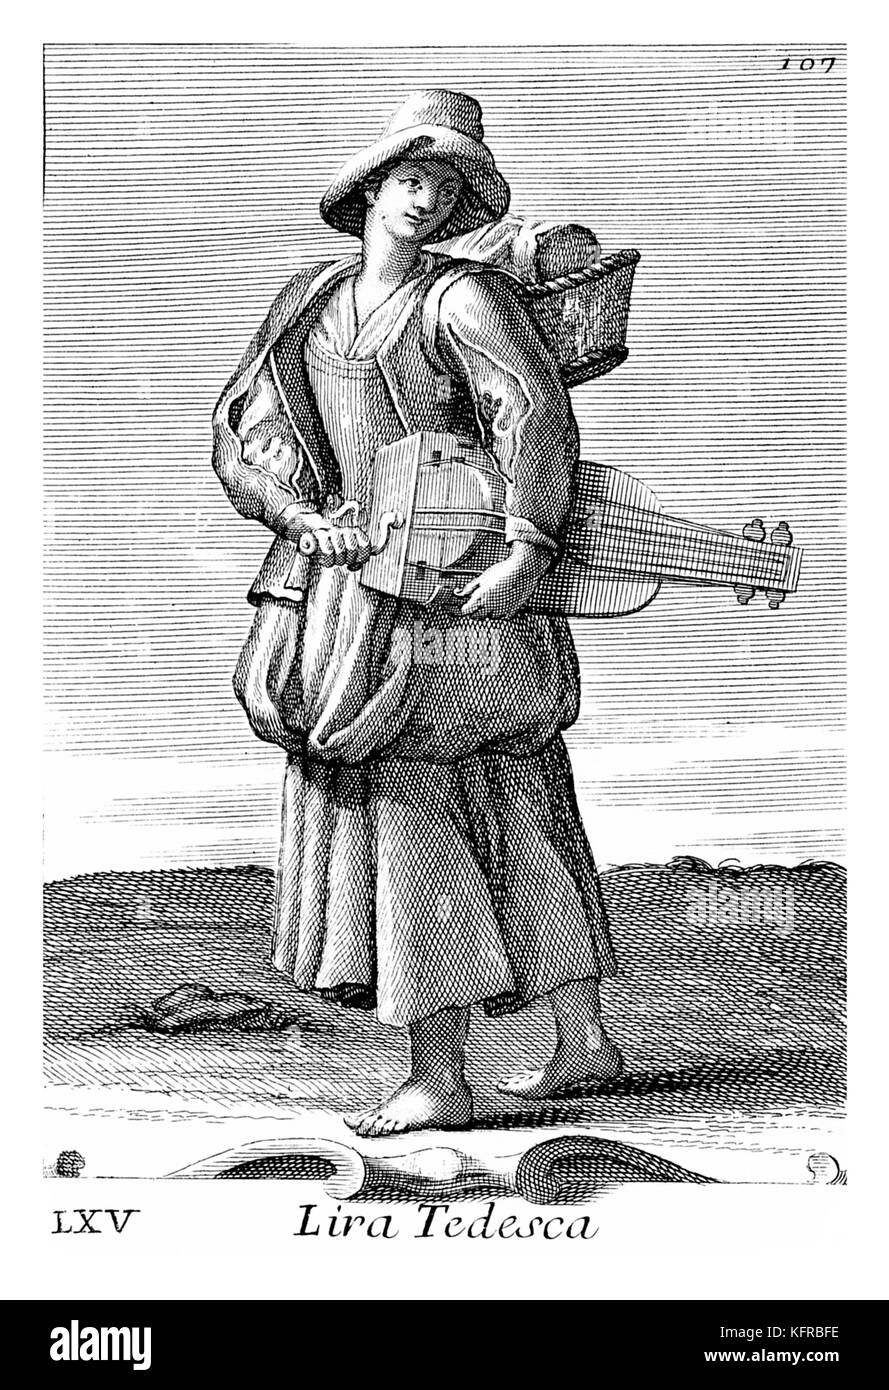 Frau spielen eine drehleier-saitige Musikinstrument, Ton produziert von einem Rad reibt an den Saiten. Abbildung von Filippo Bonanni's 'Gabinetto Armonico" im Jahre 1723 veröffentlicht, Abbildung 65. Kupferstich von Arnold Van Westerhout. Bildunterschrift liest Lira.Tedesca. Stockfoto